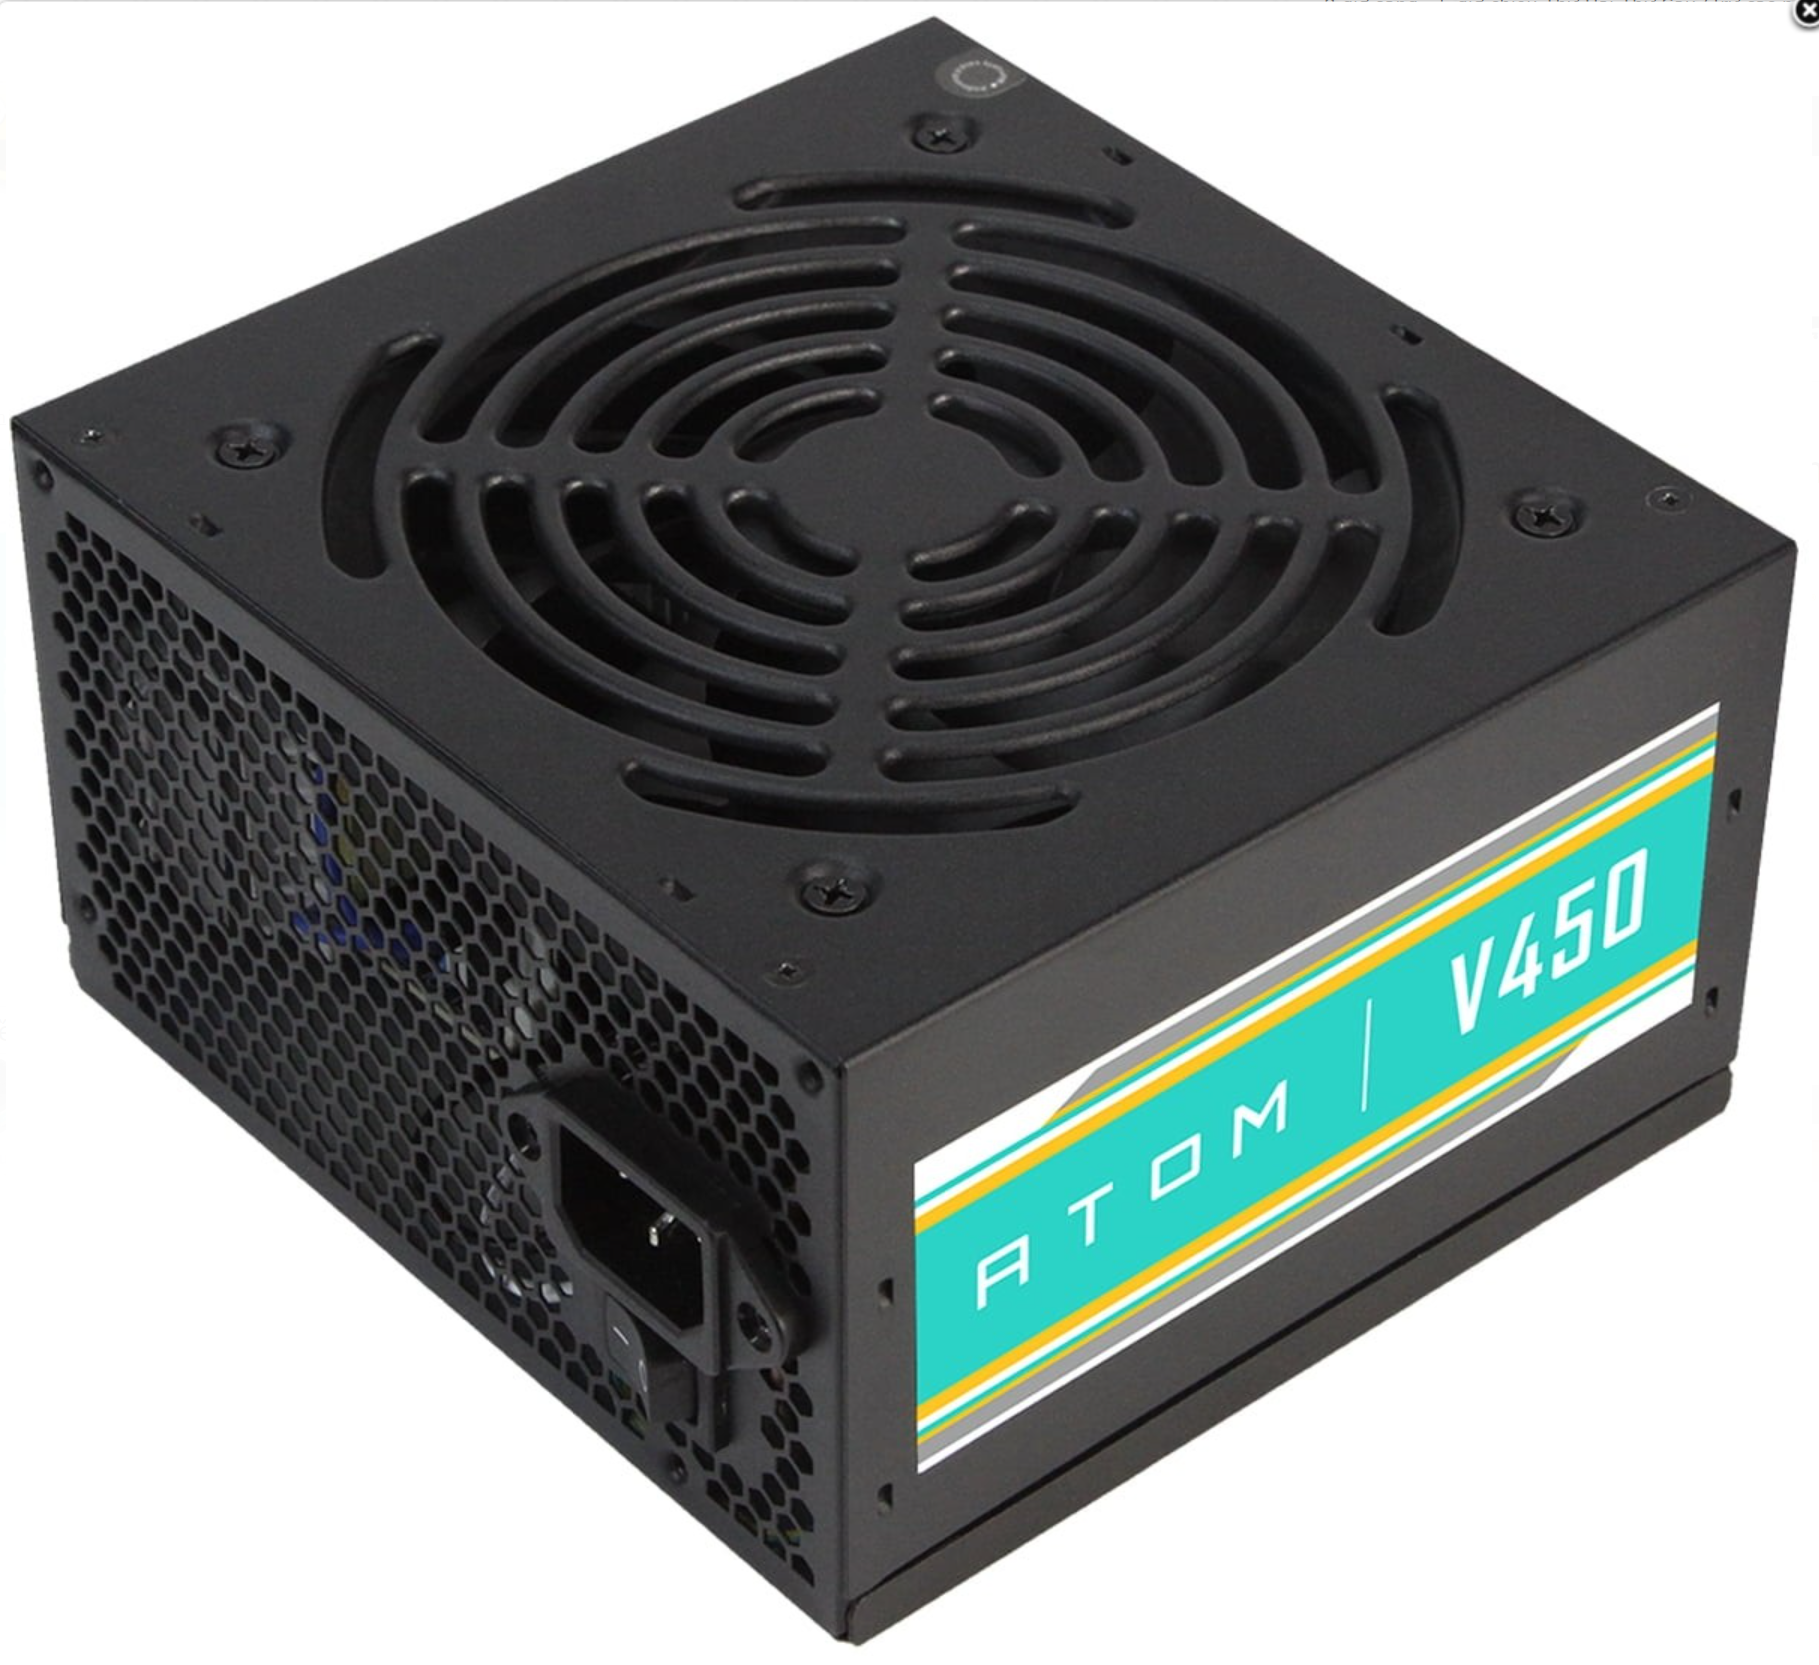 Nguồn Antec 450W Atom V450 công suất thực - Hàng chính hãng Khải Thiên phân phối